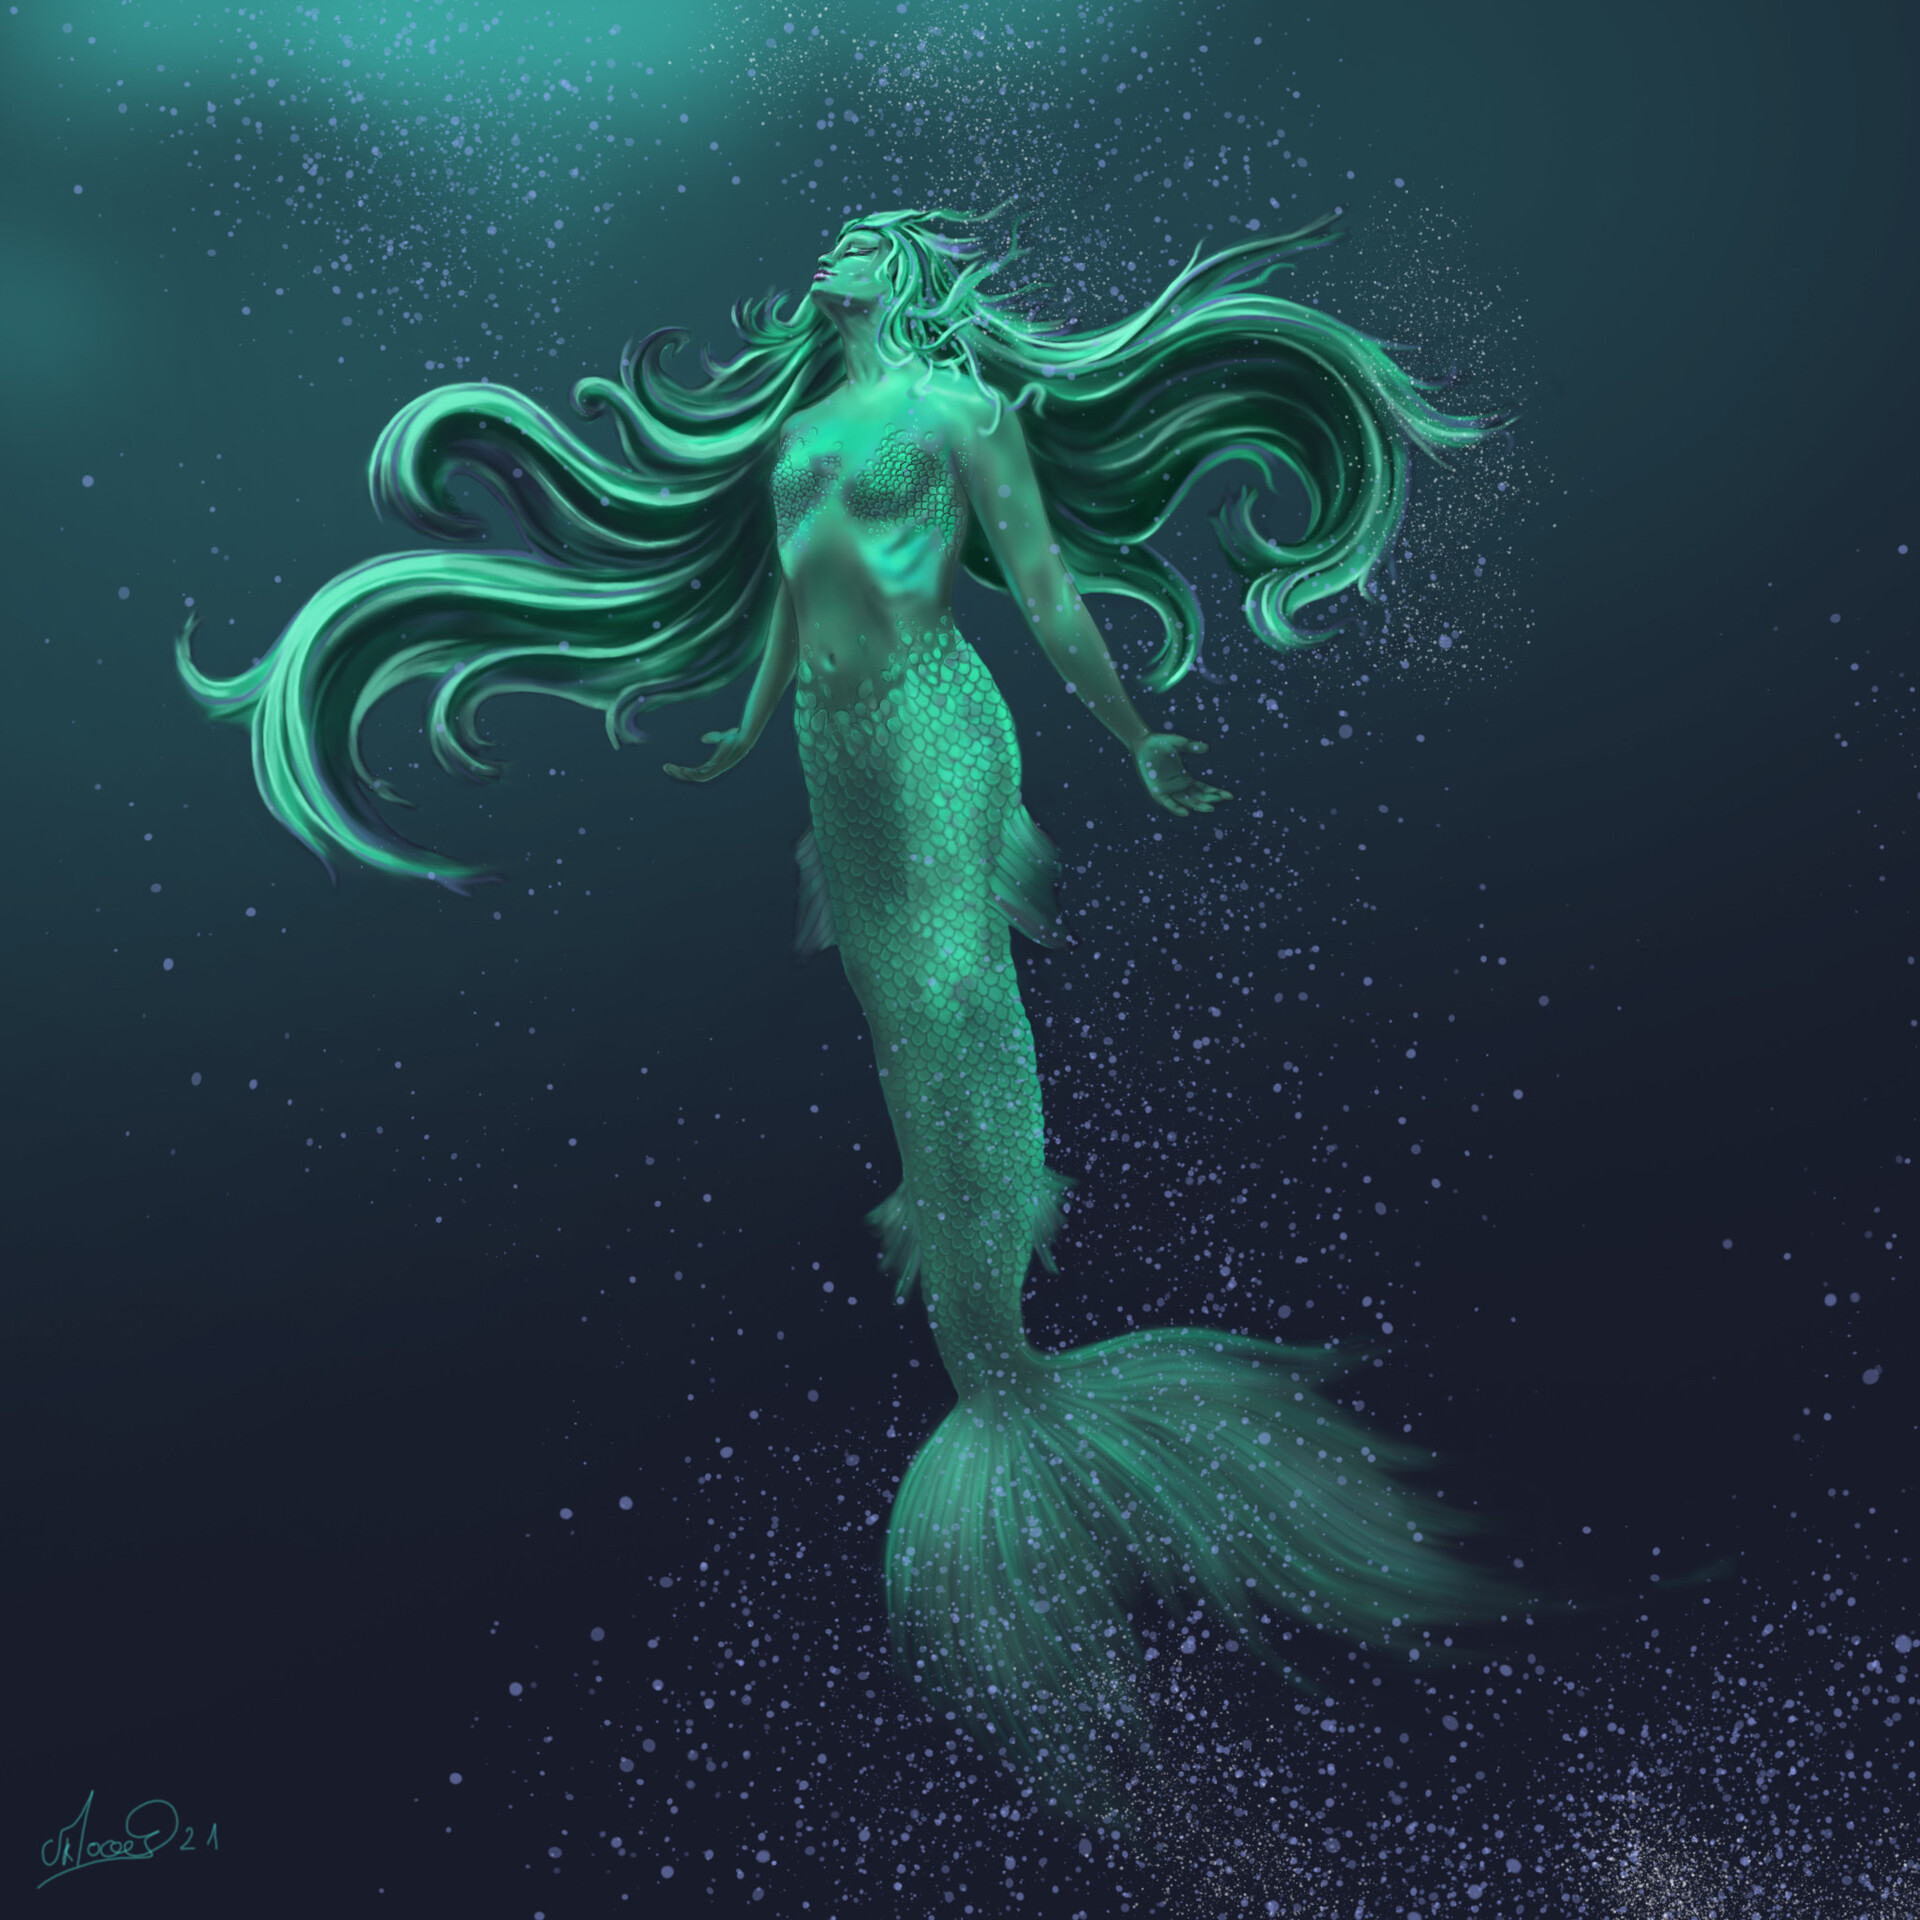 Artstation Mermaid